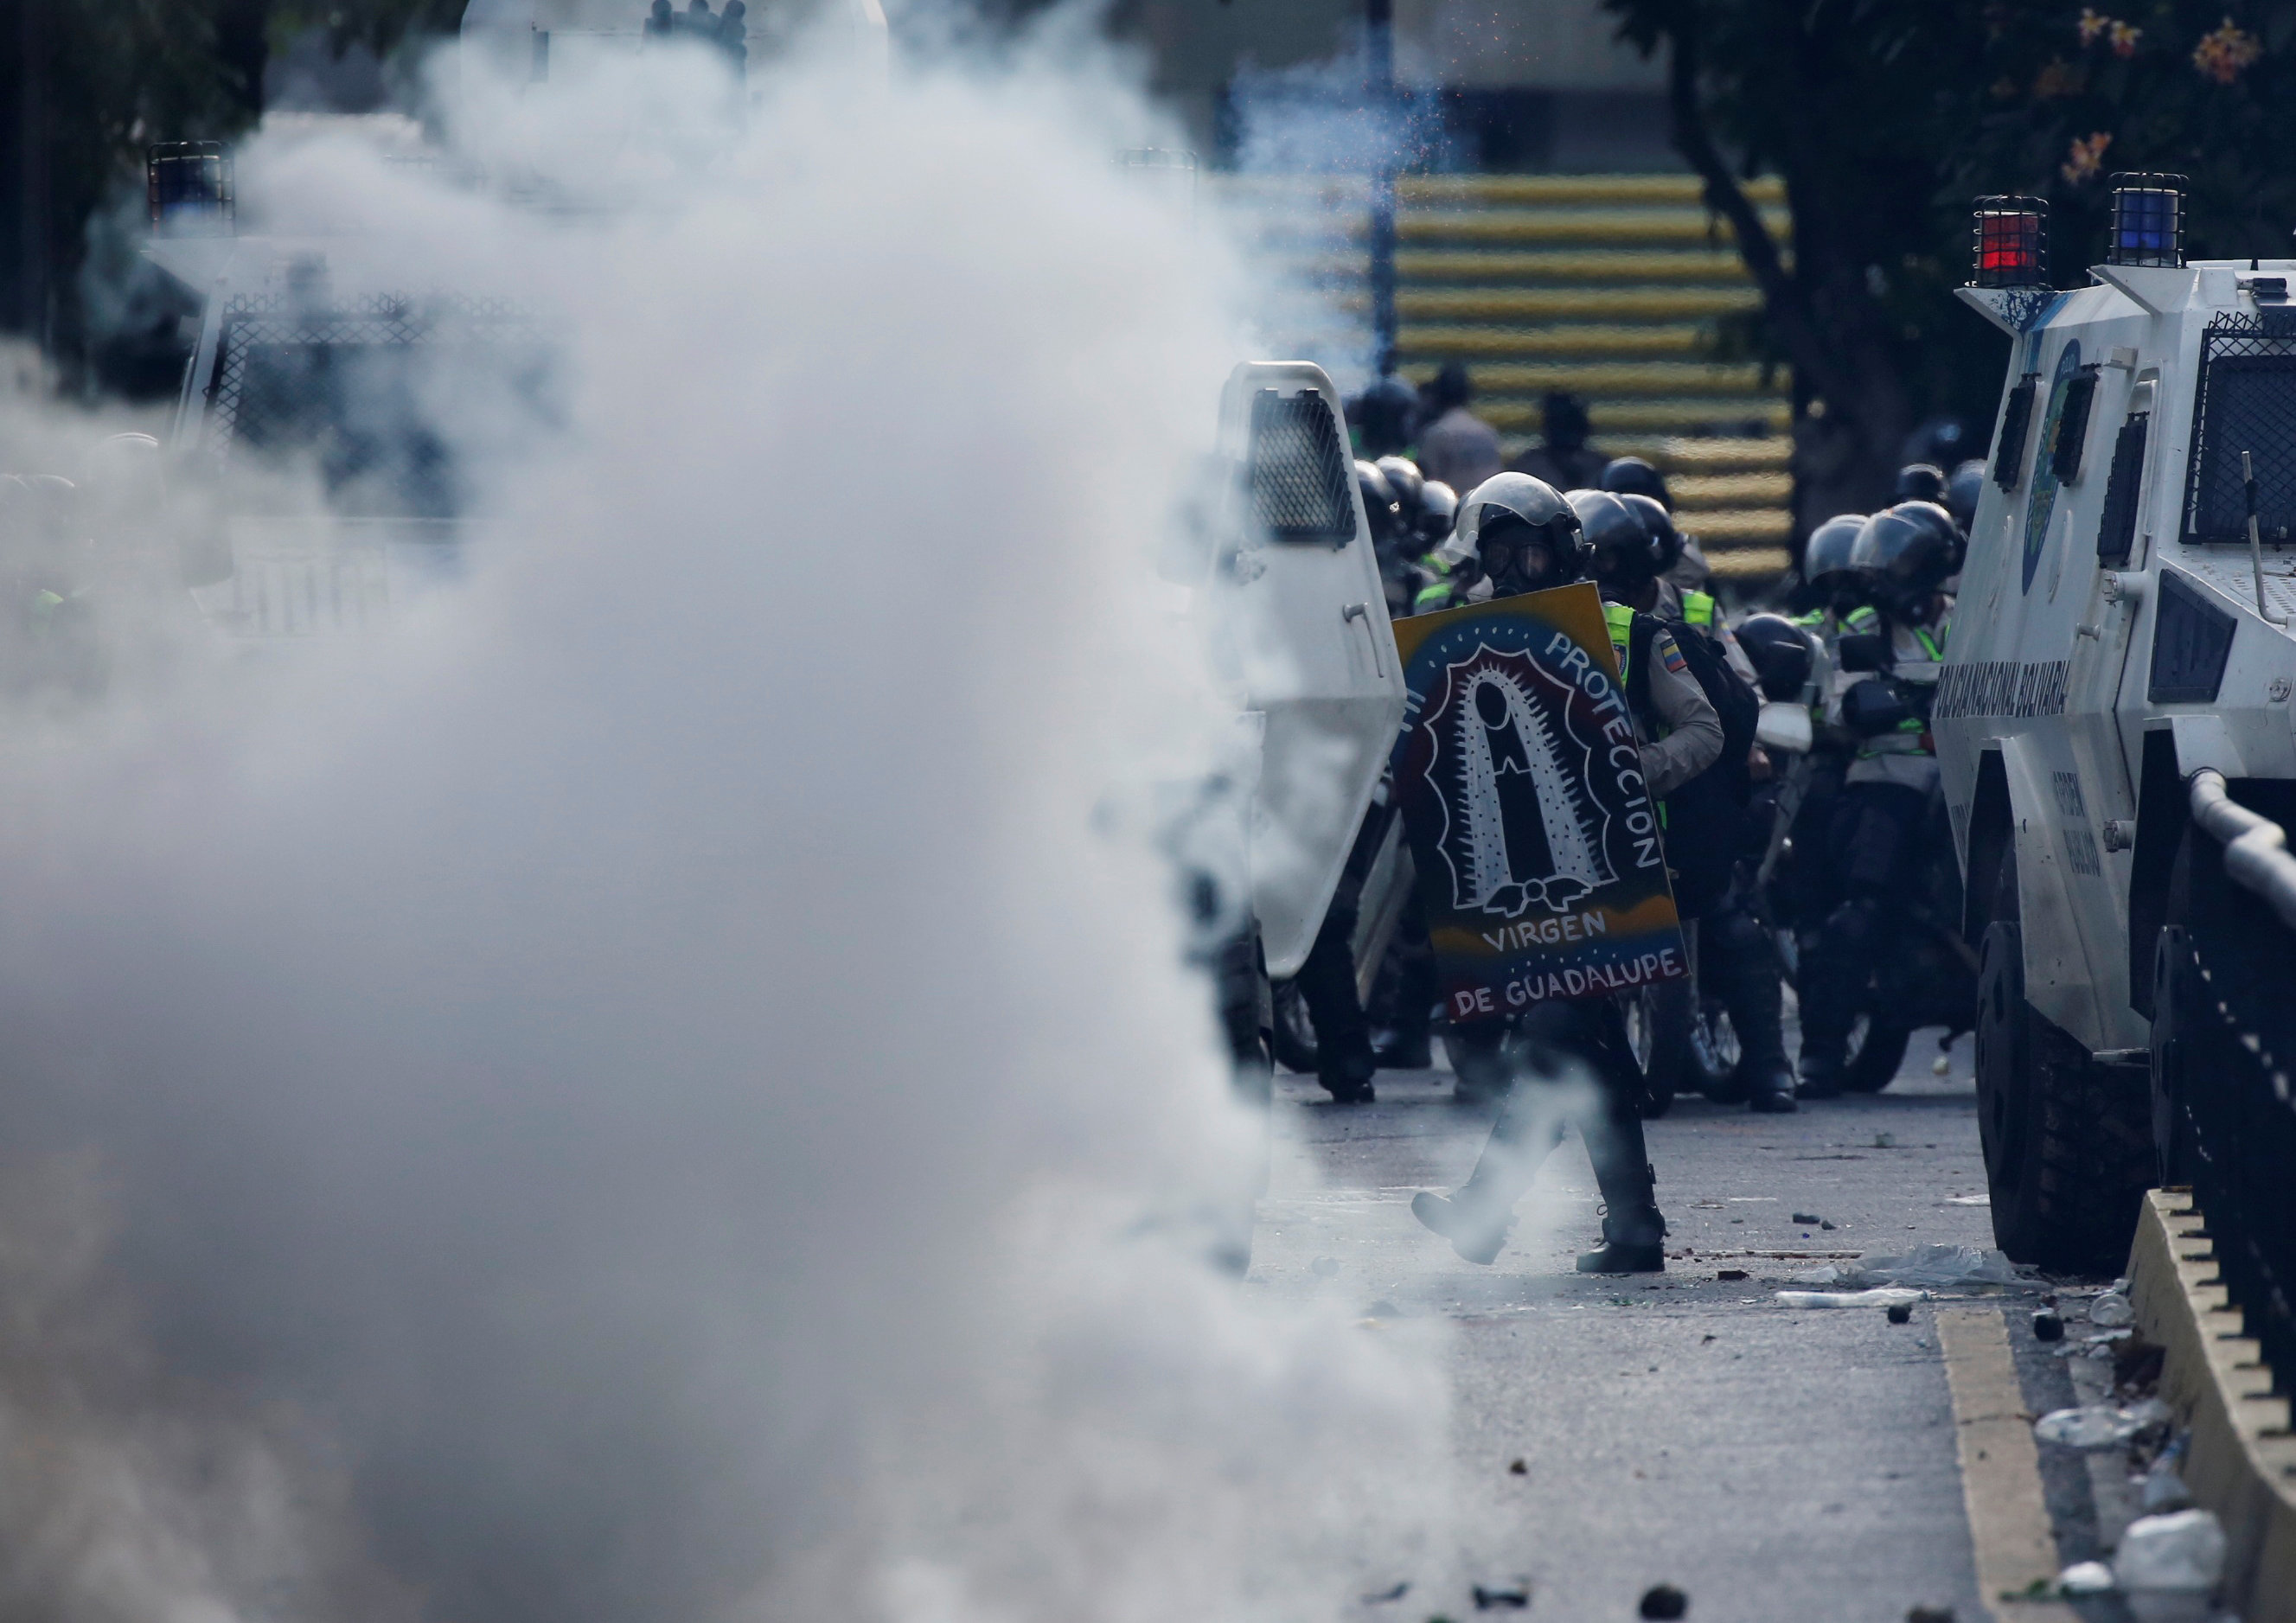 الغاز المسيل للدموع تنتشر بمحيط الاحتجاجات فى فنزويلا